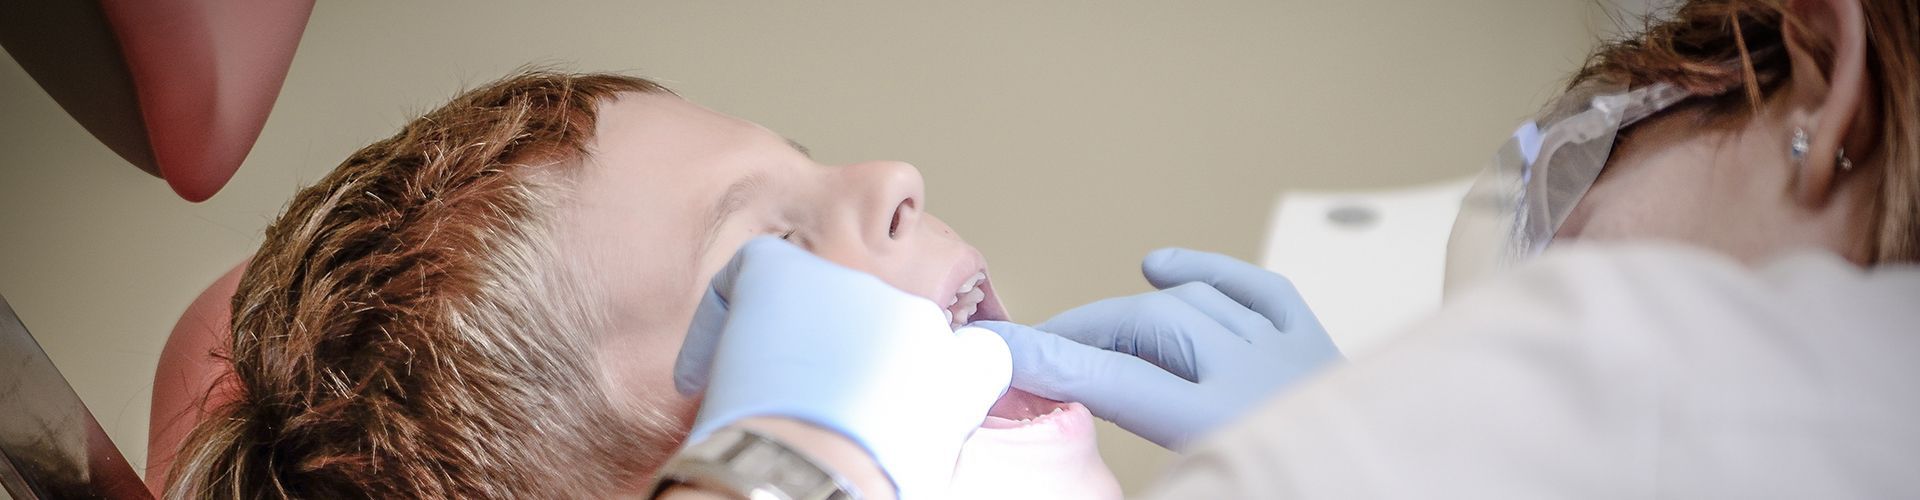 Zahnärztliche Untersuchung